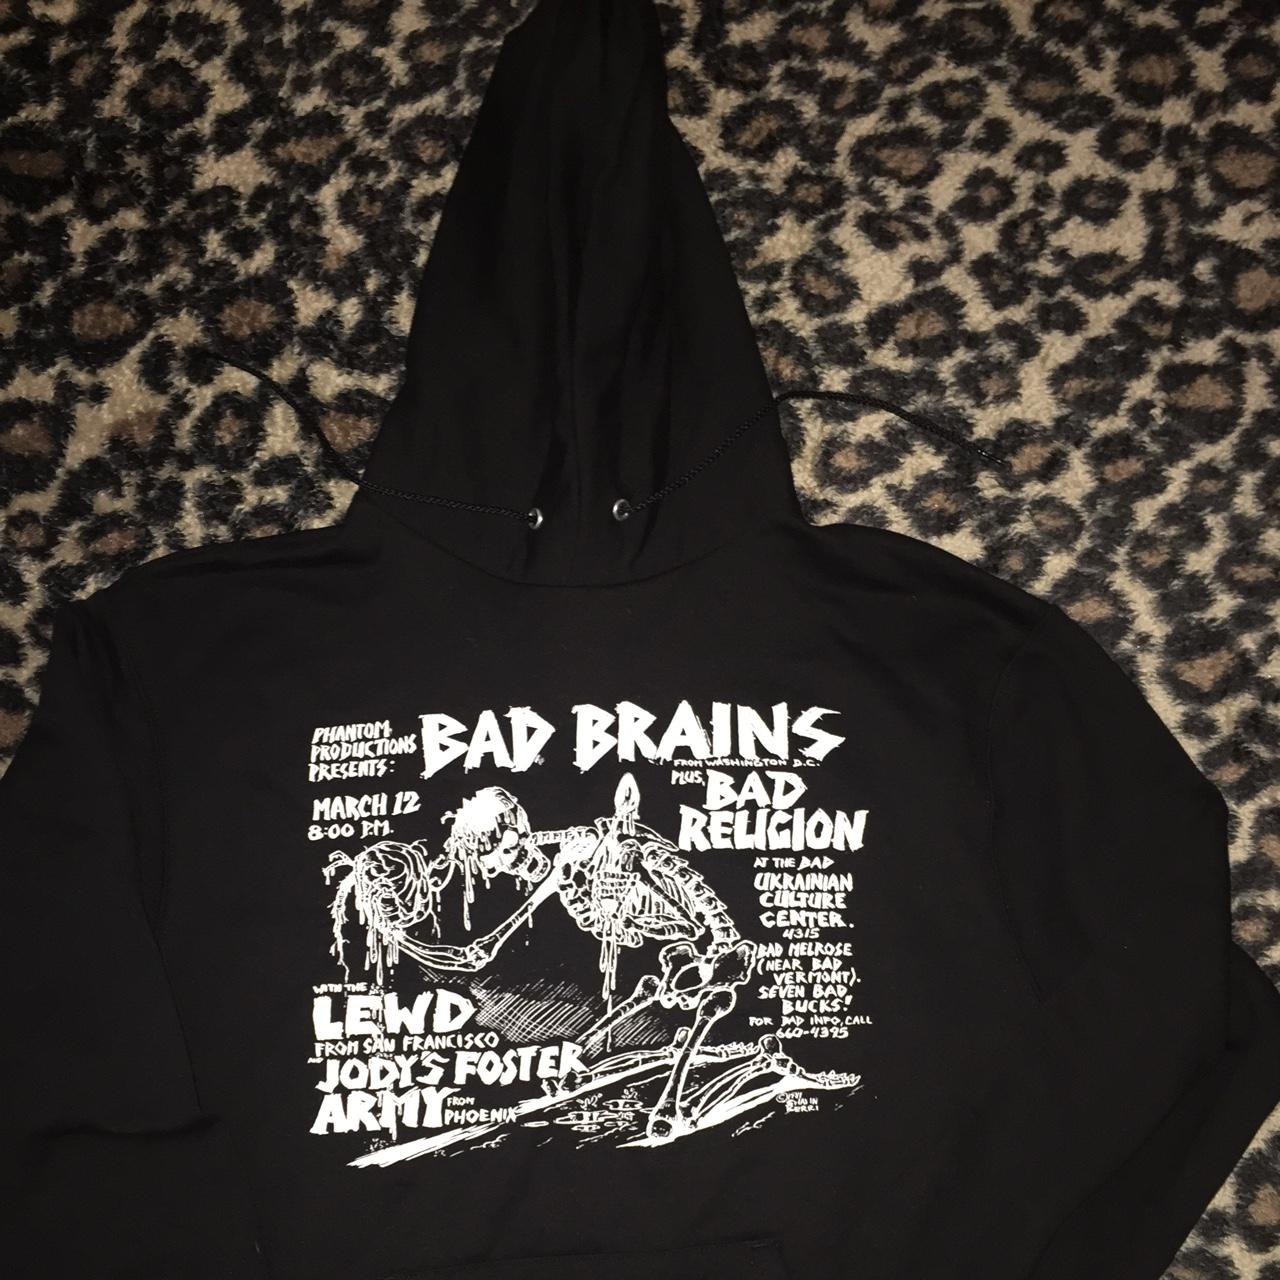 Bad Brains flyer pull over hoodie. Artwork taken